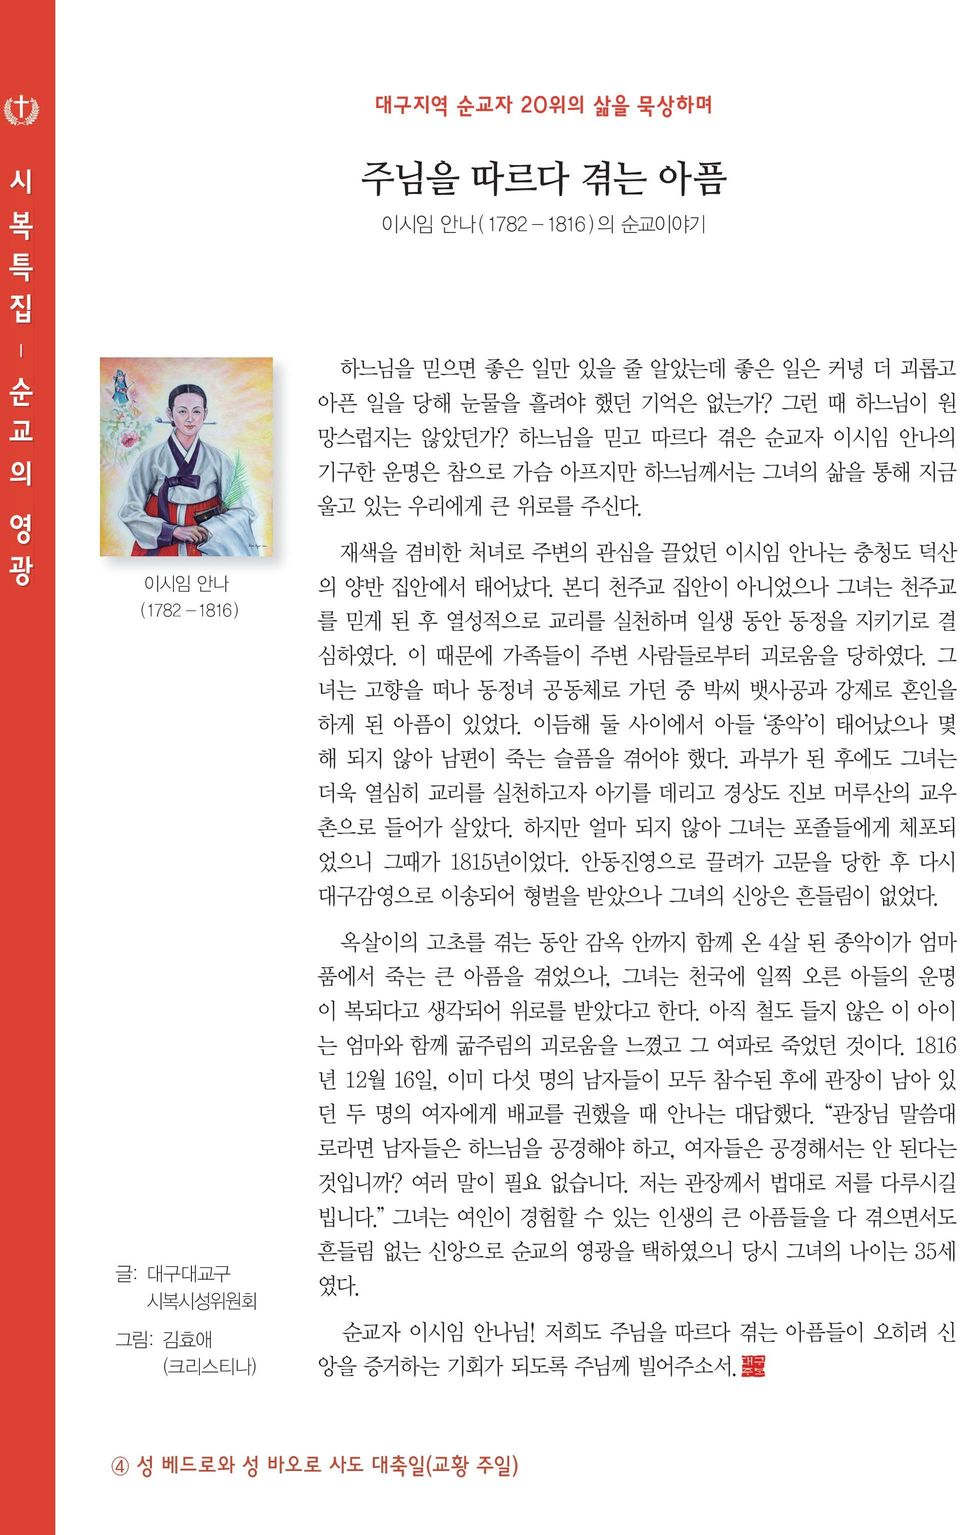 시복시성위원회 그림: 김효애 (크리스티나) 이시임 안나 (